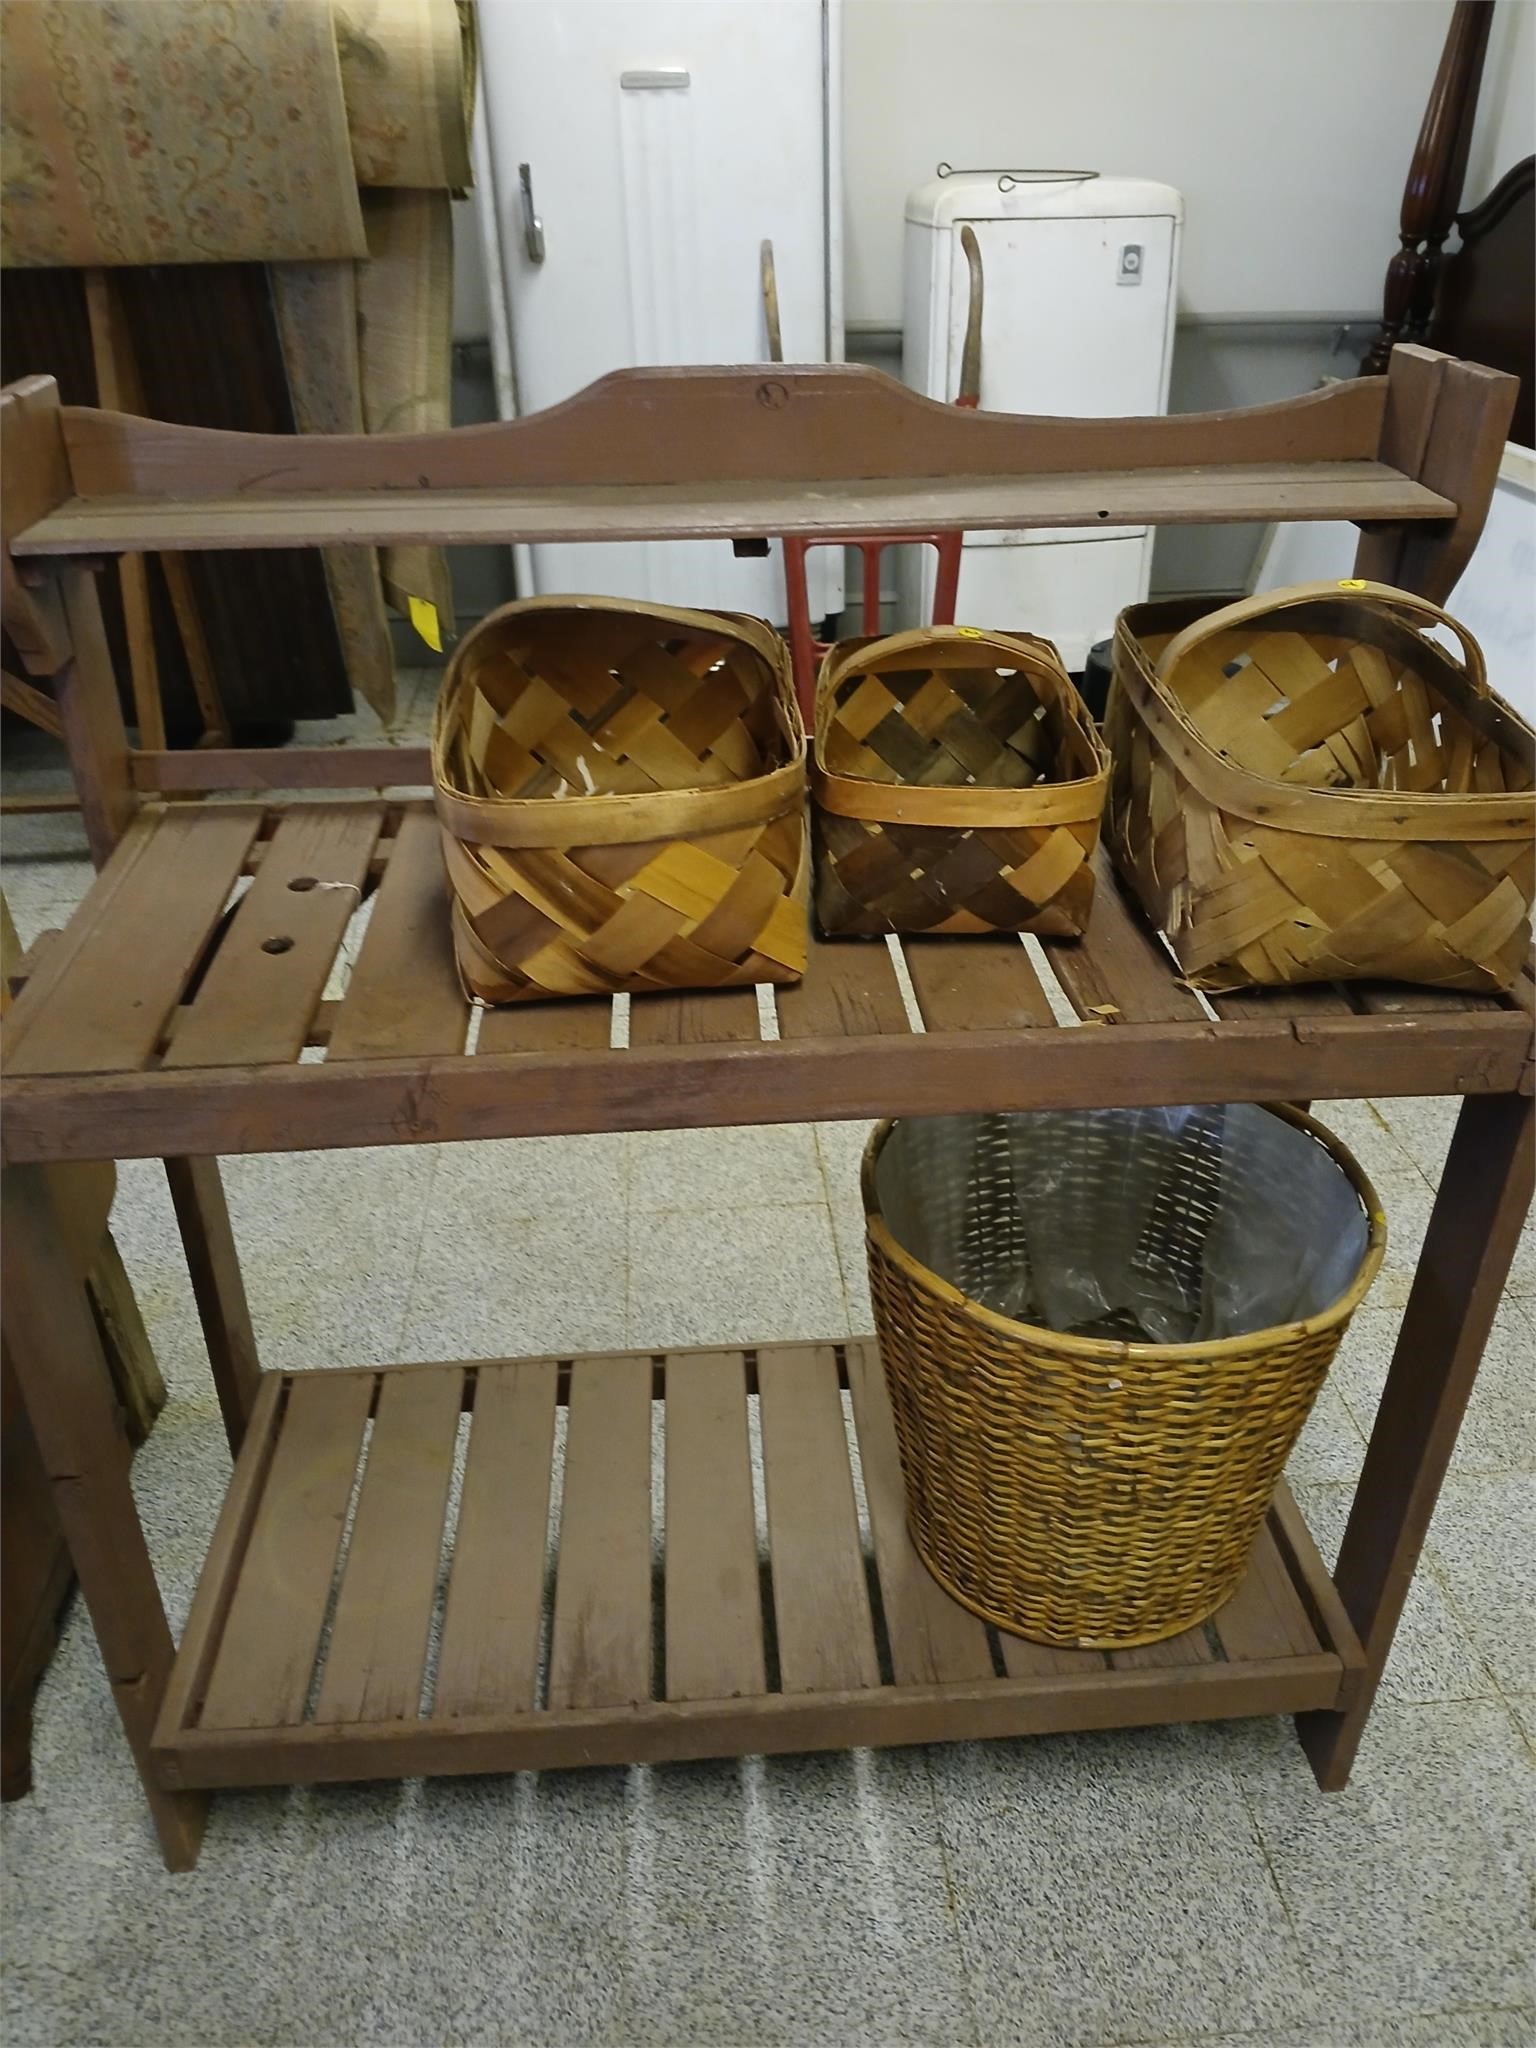 Wooden Garden Shelf with 4 Baskets